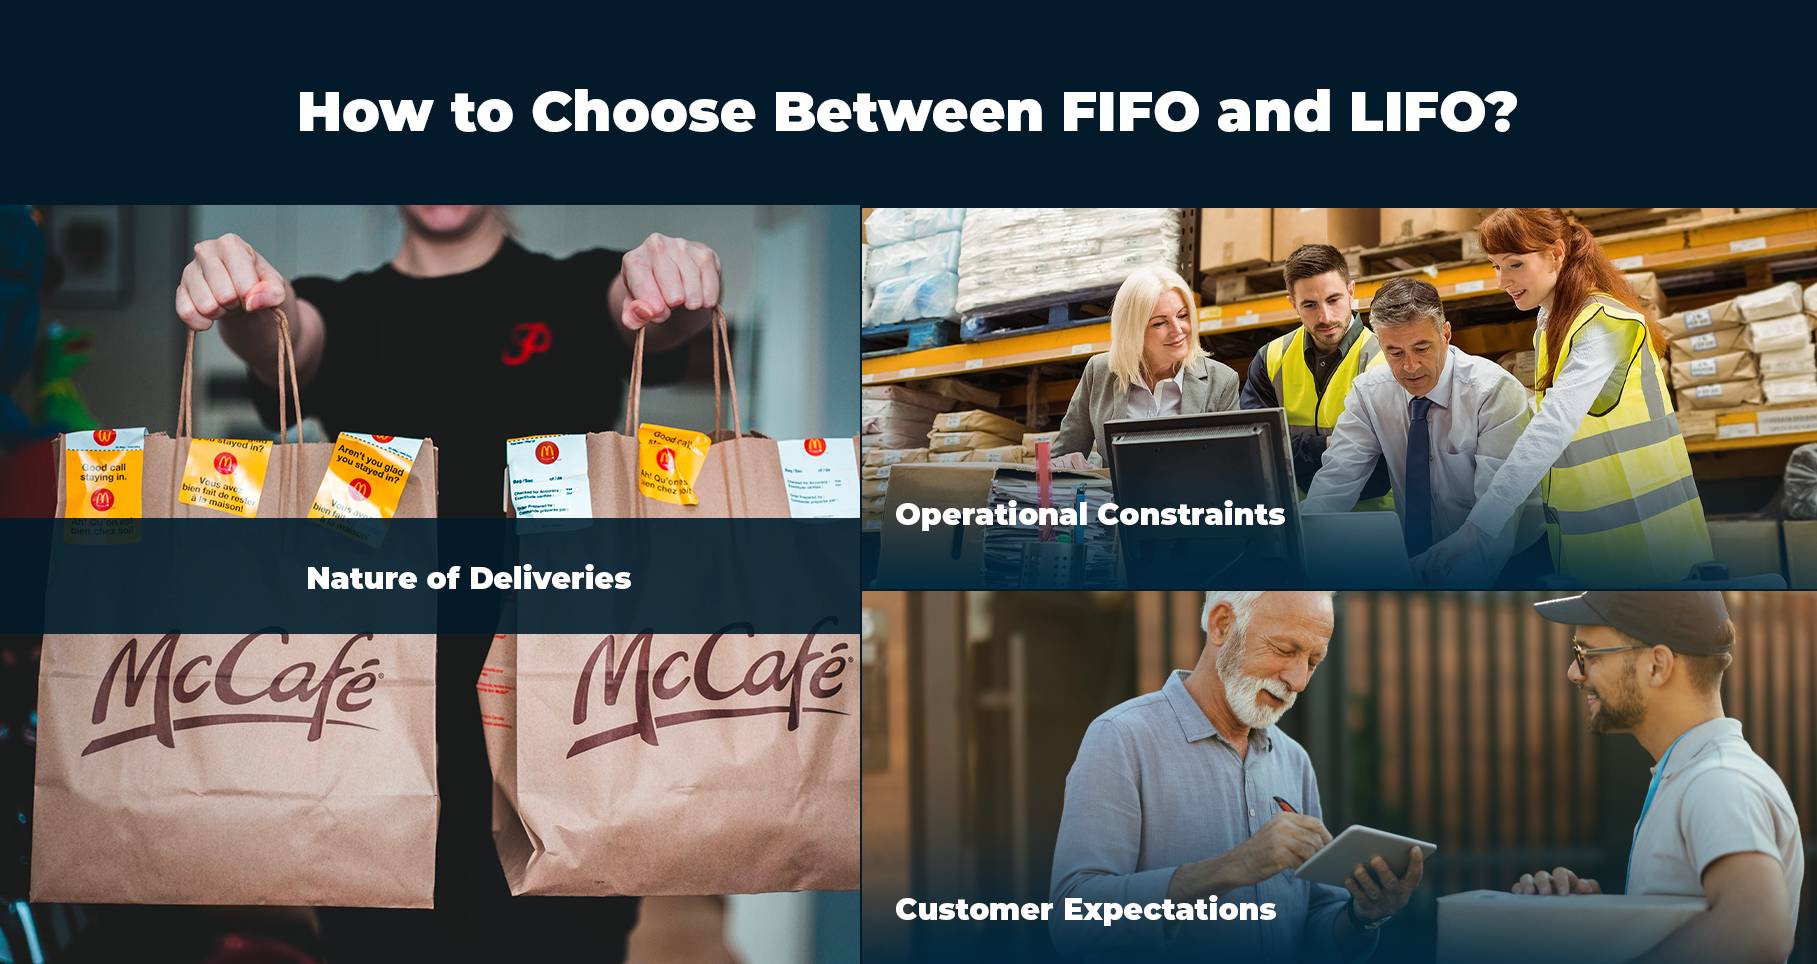 So wählen Sie bei der Erstellung einer Logistikplanung zwischen FIFO und LIFO